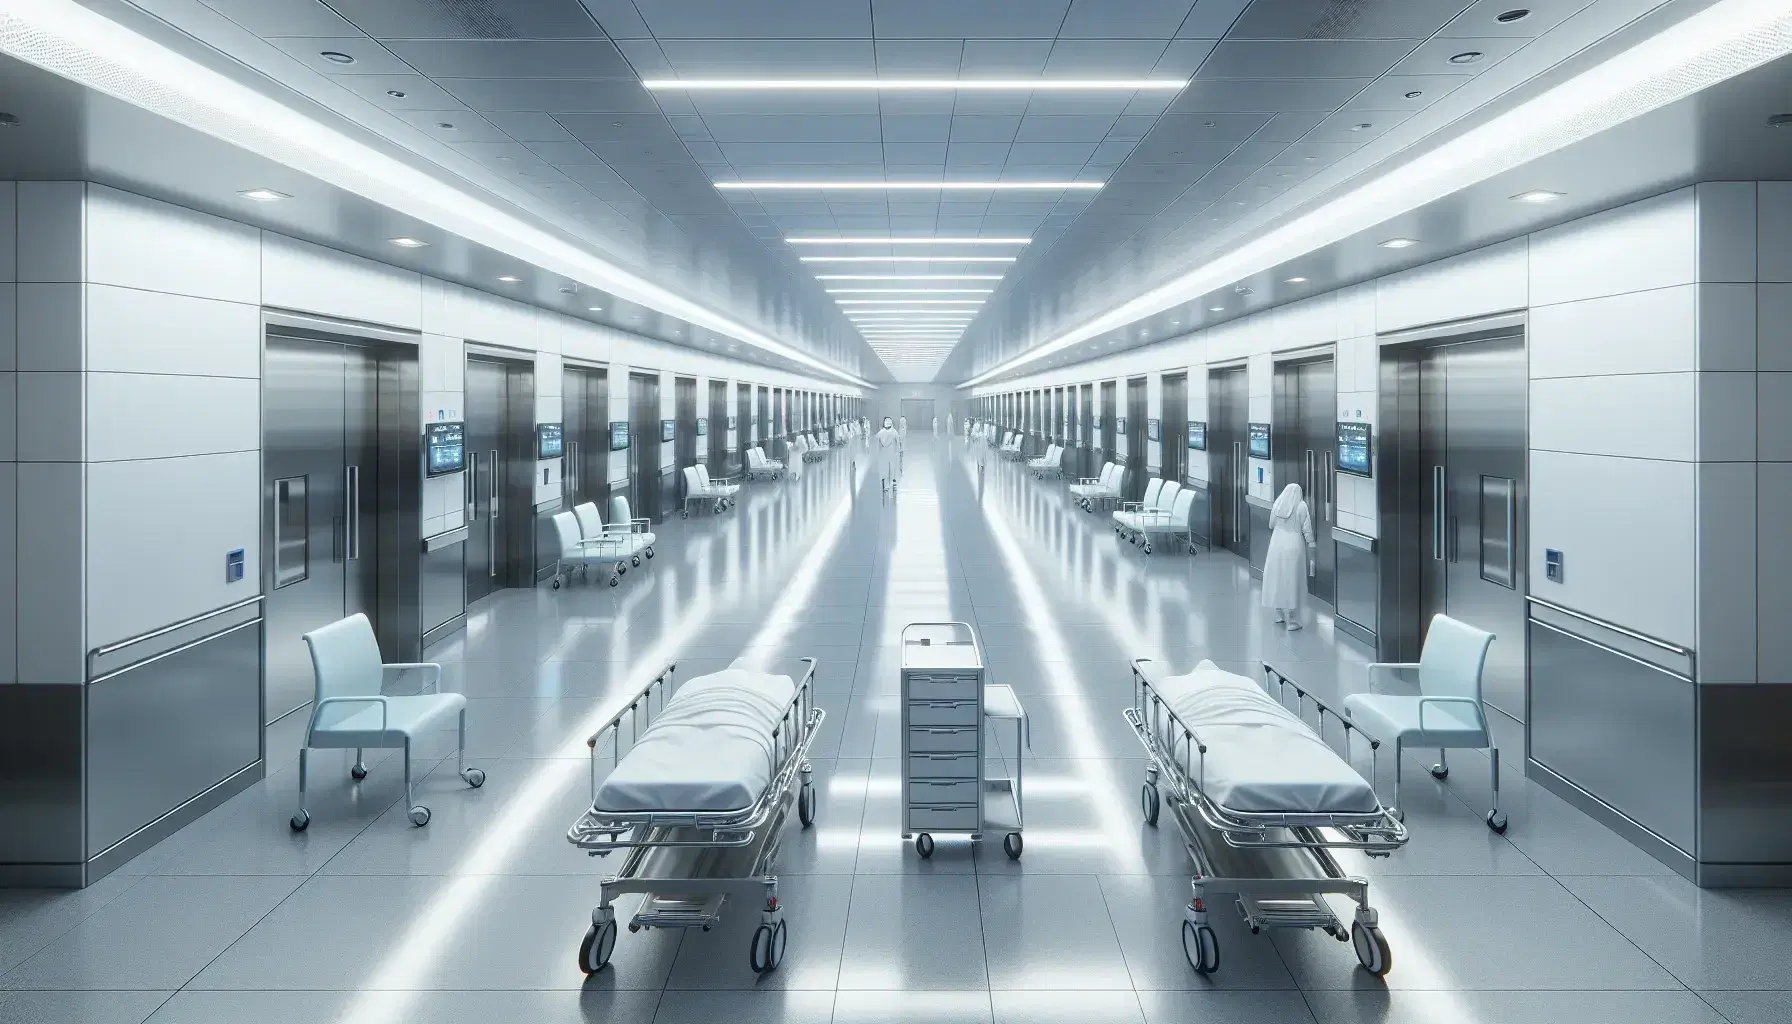 Corredor hospitalario moderno con camillas metálicas, sillas de espera azules y personal médico al fondo, iluminado por luces fluorescentes.